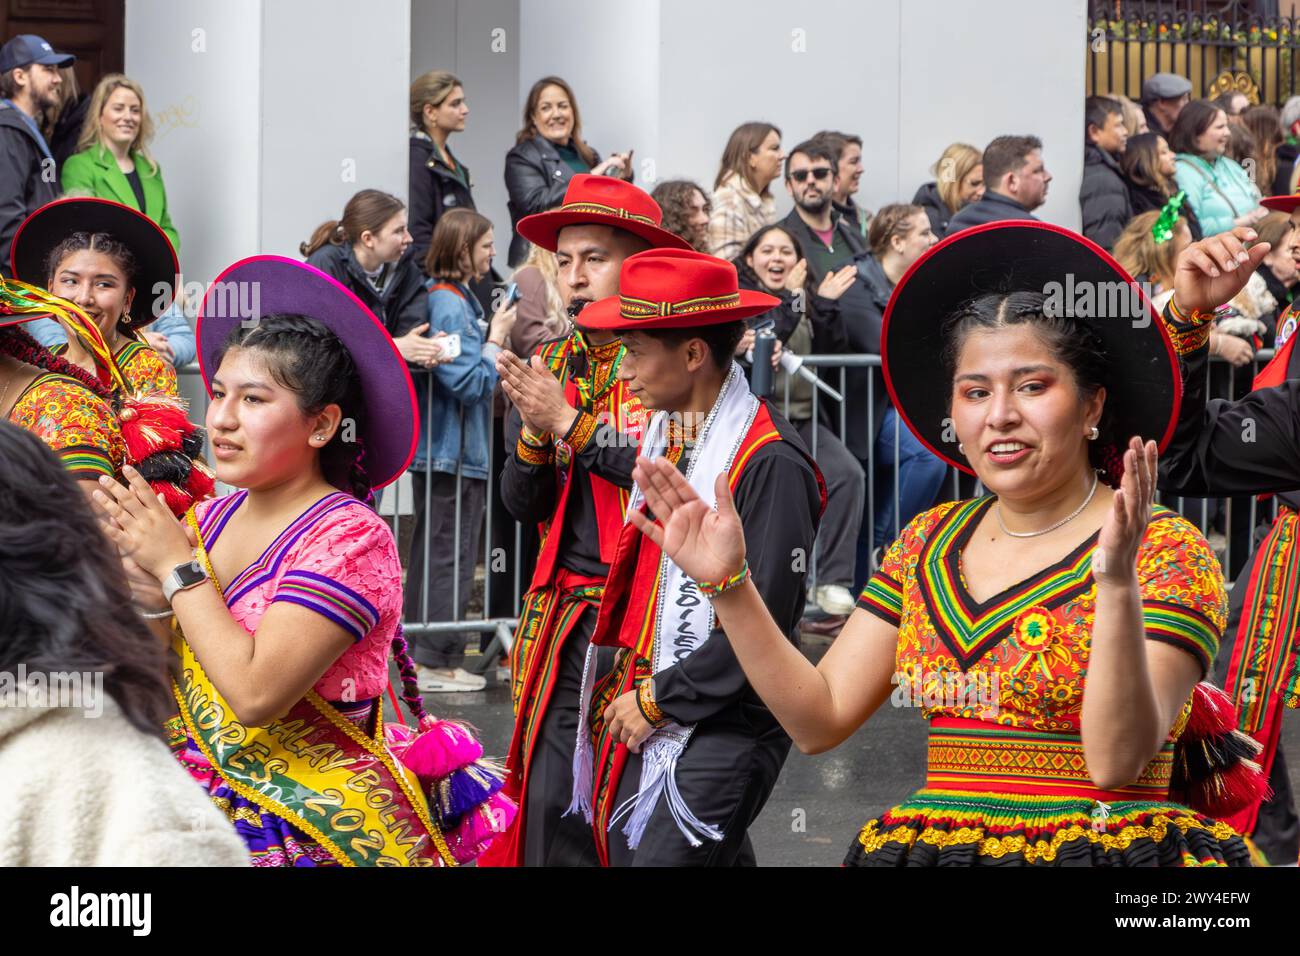 Des danseurs boliviens aux costumes colorés prennent part à la procession du défilé de la Saint Patrick à Londres. Banque D'Images